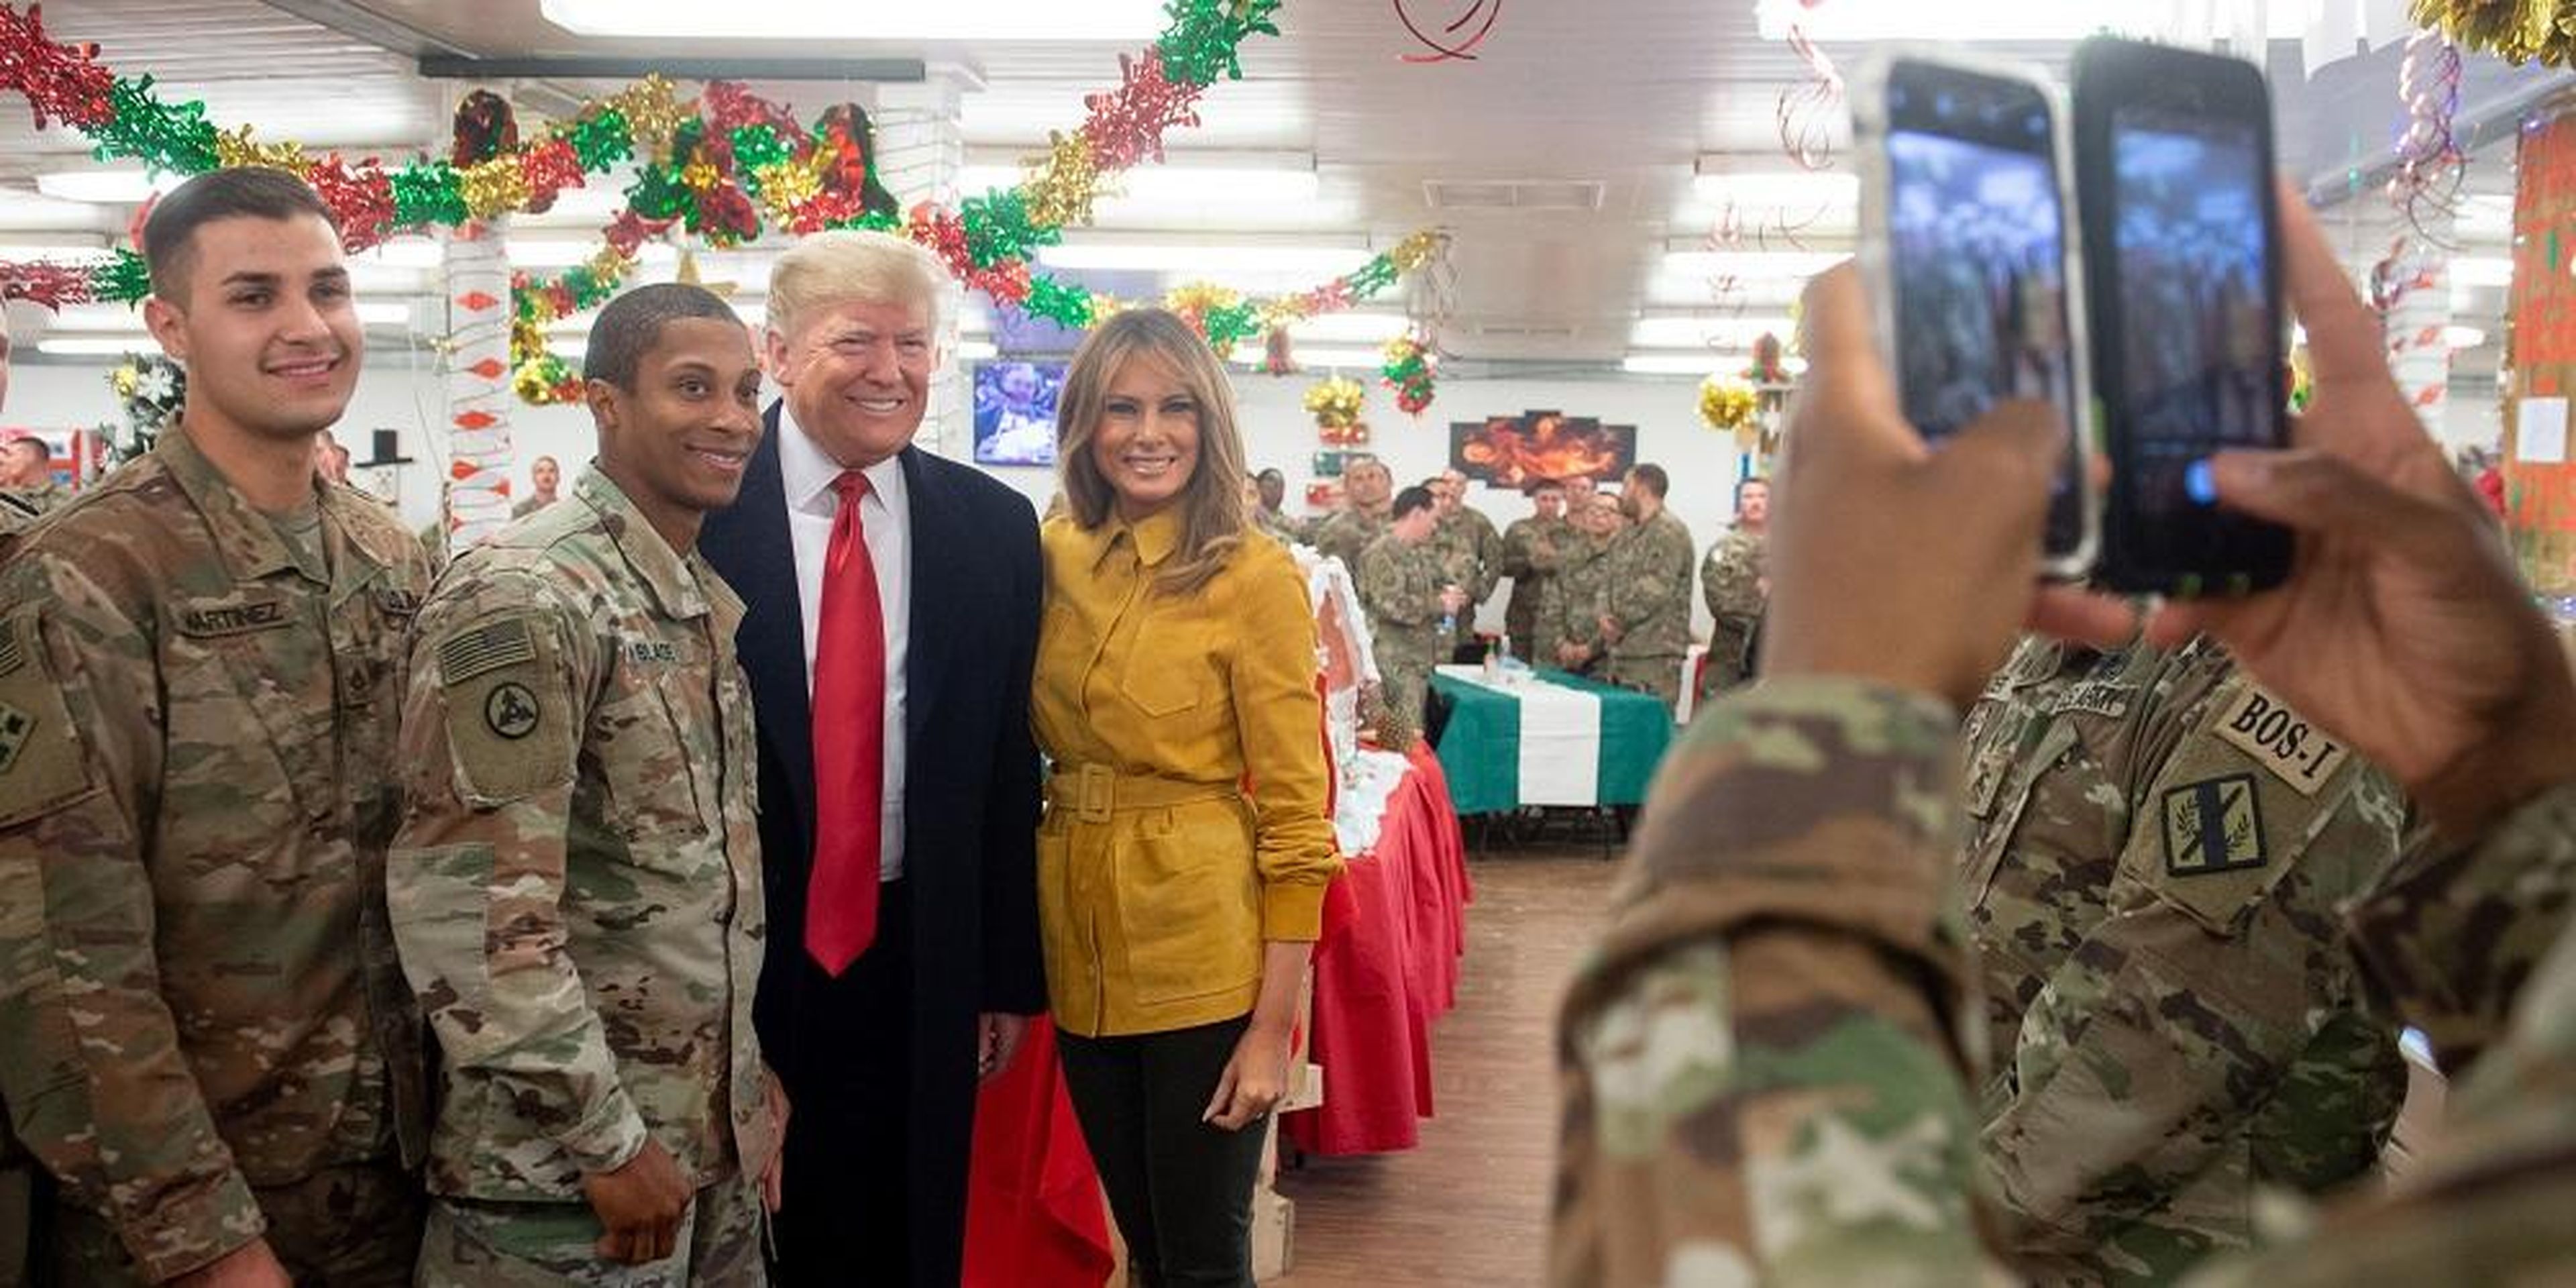 El presidente Donald Trump llegó a Irak en su primera visita a las tropas estadounidenses desplegadas en una zona de guerra desde su elección hace dos años.